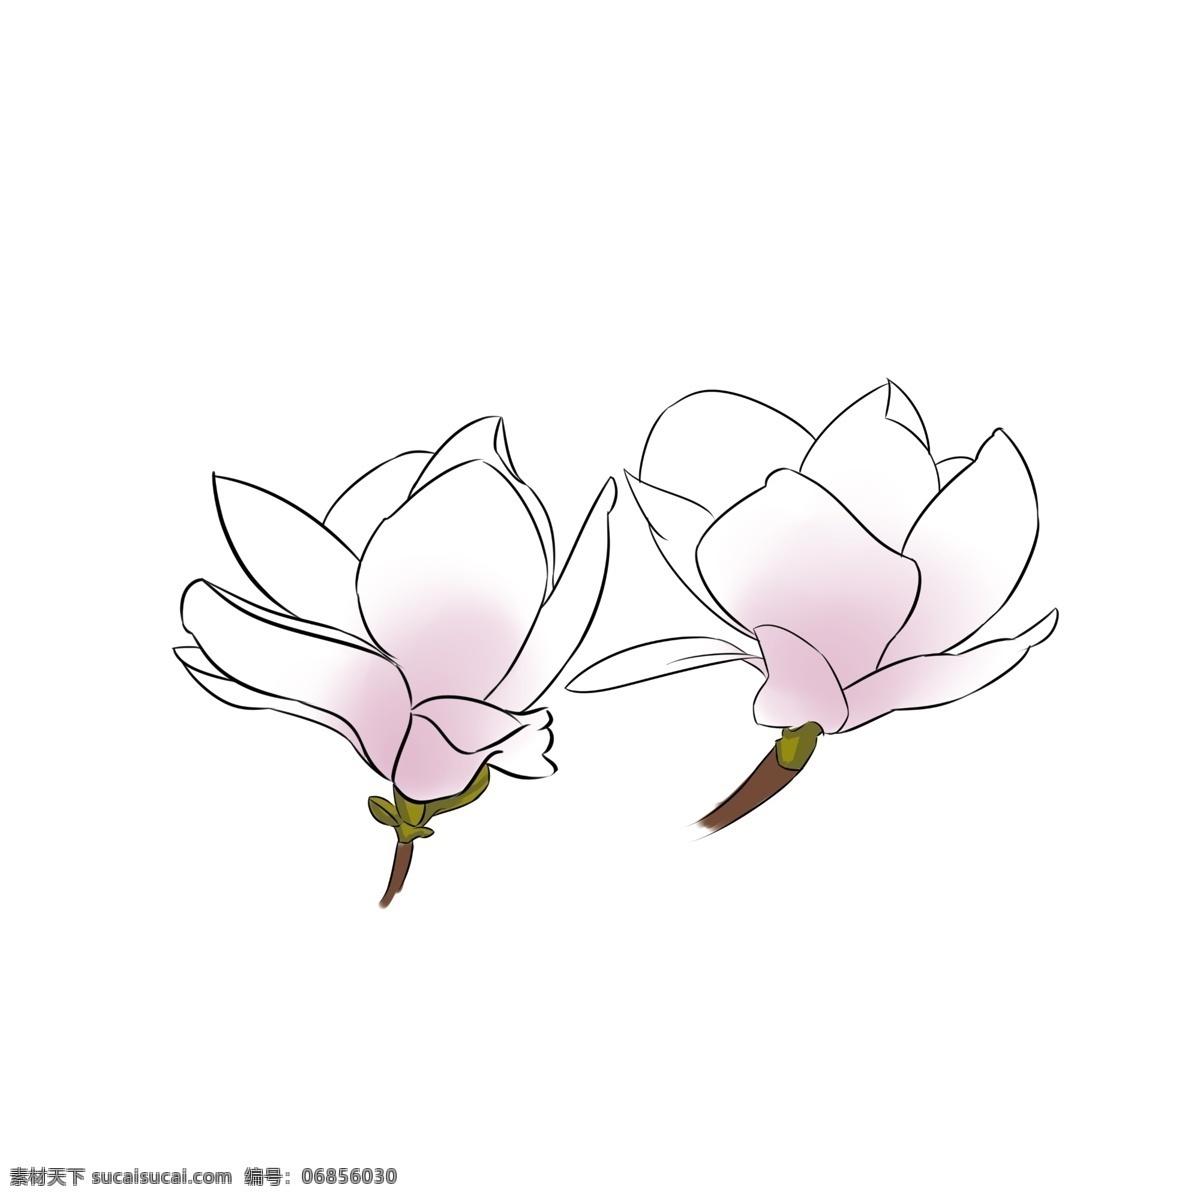 两 朵 漂亮 玉兰花 紫色玉兰花 白色玉兰花 两朵玉兰花 漂亮的玉兰花 插画 玉兰花插图 花